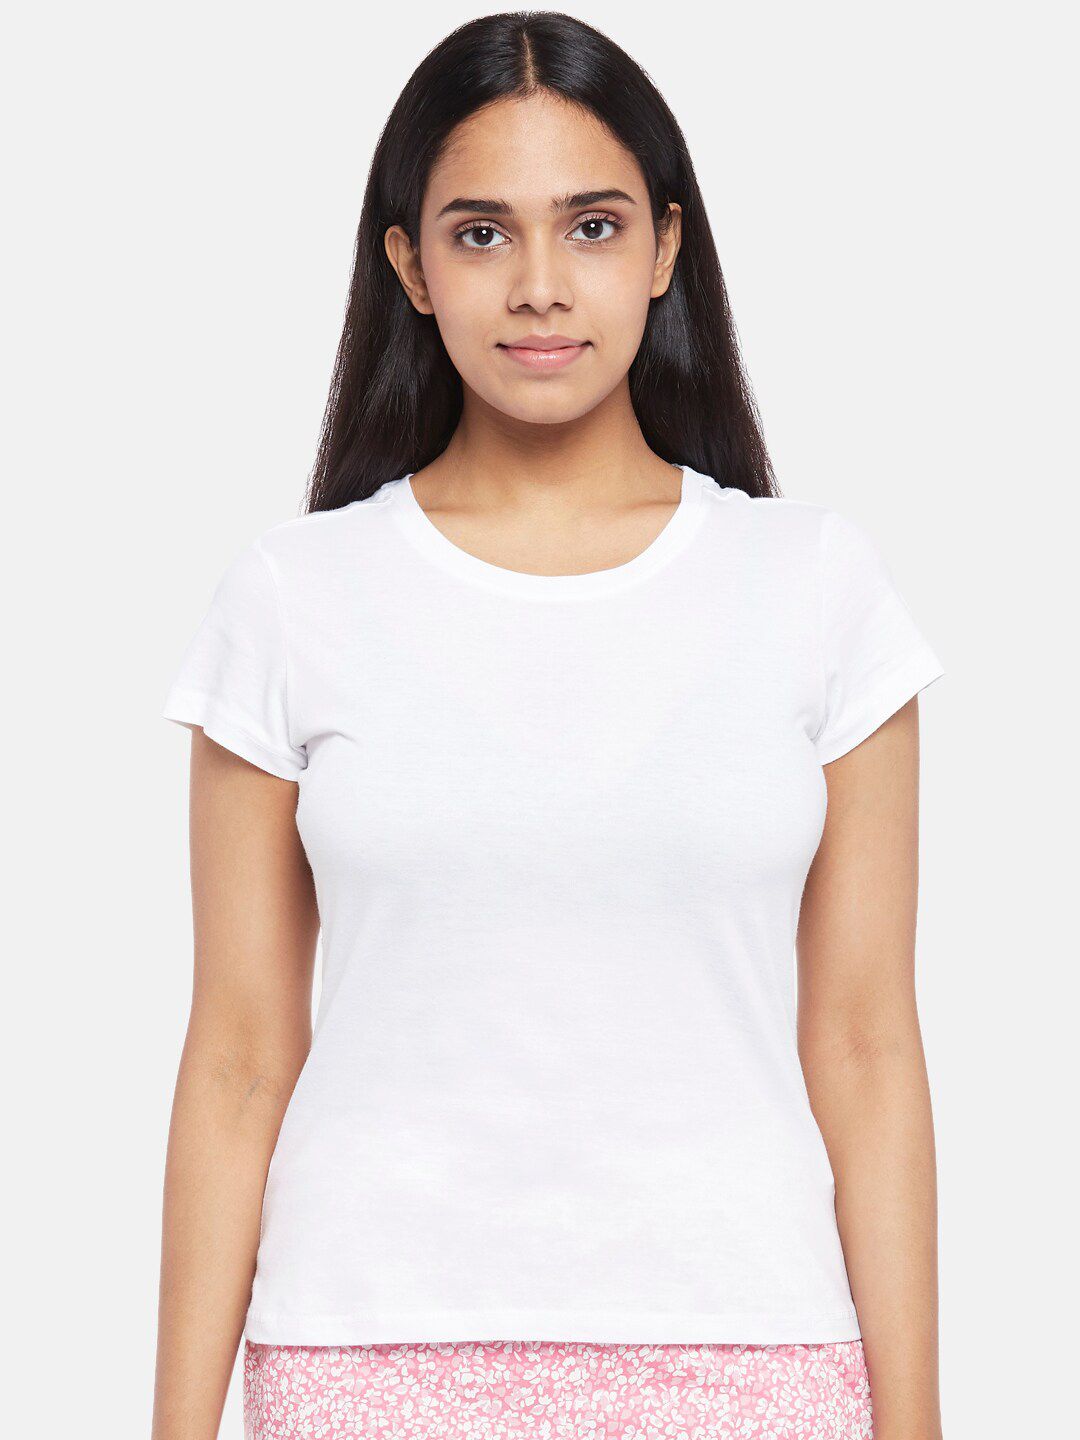 Dreamz by Pantaloons Women White Regular Lounge tshirt Price in India